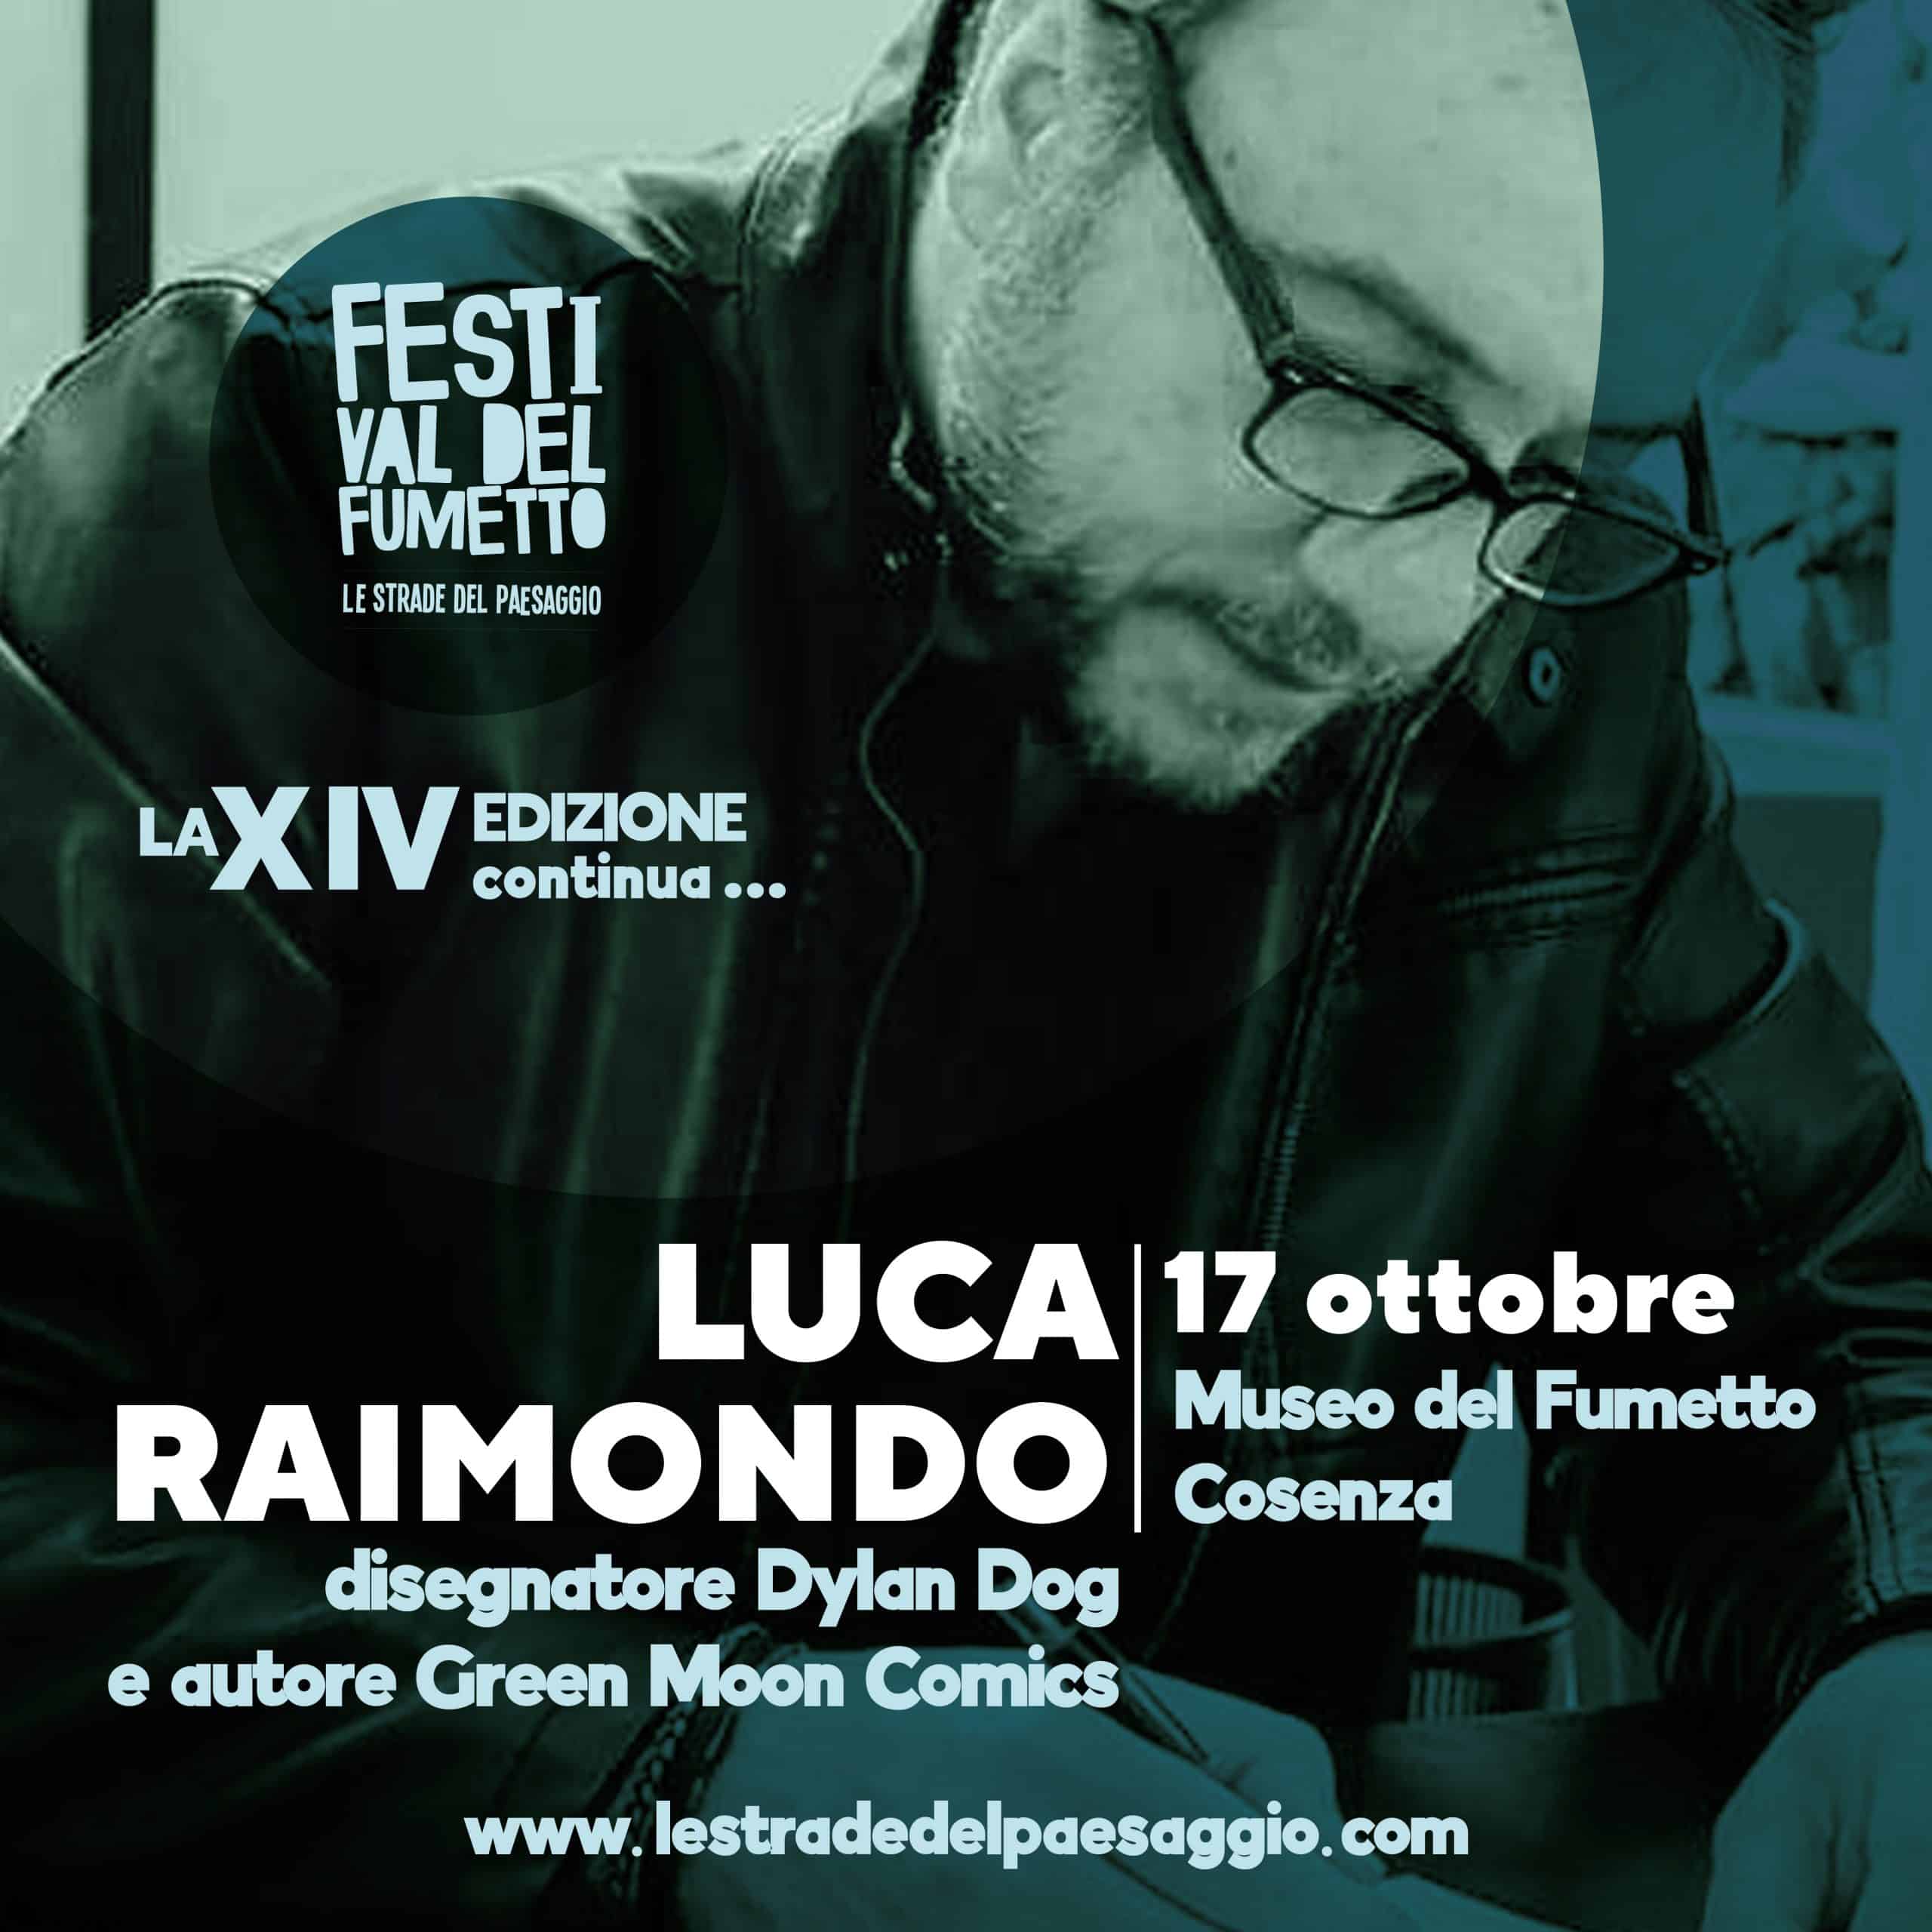 Luca Raimondo disegnatore